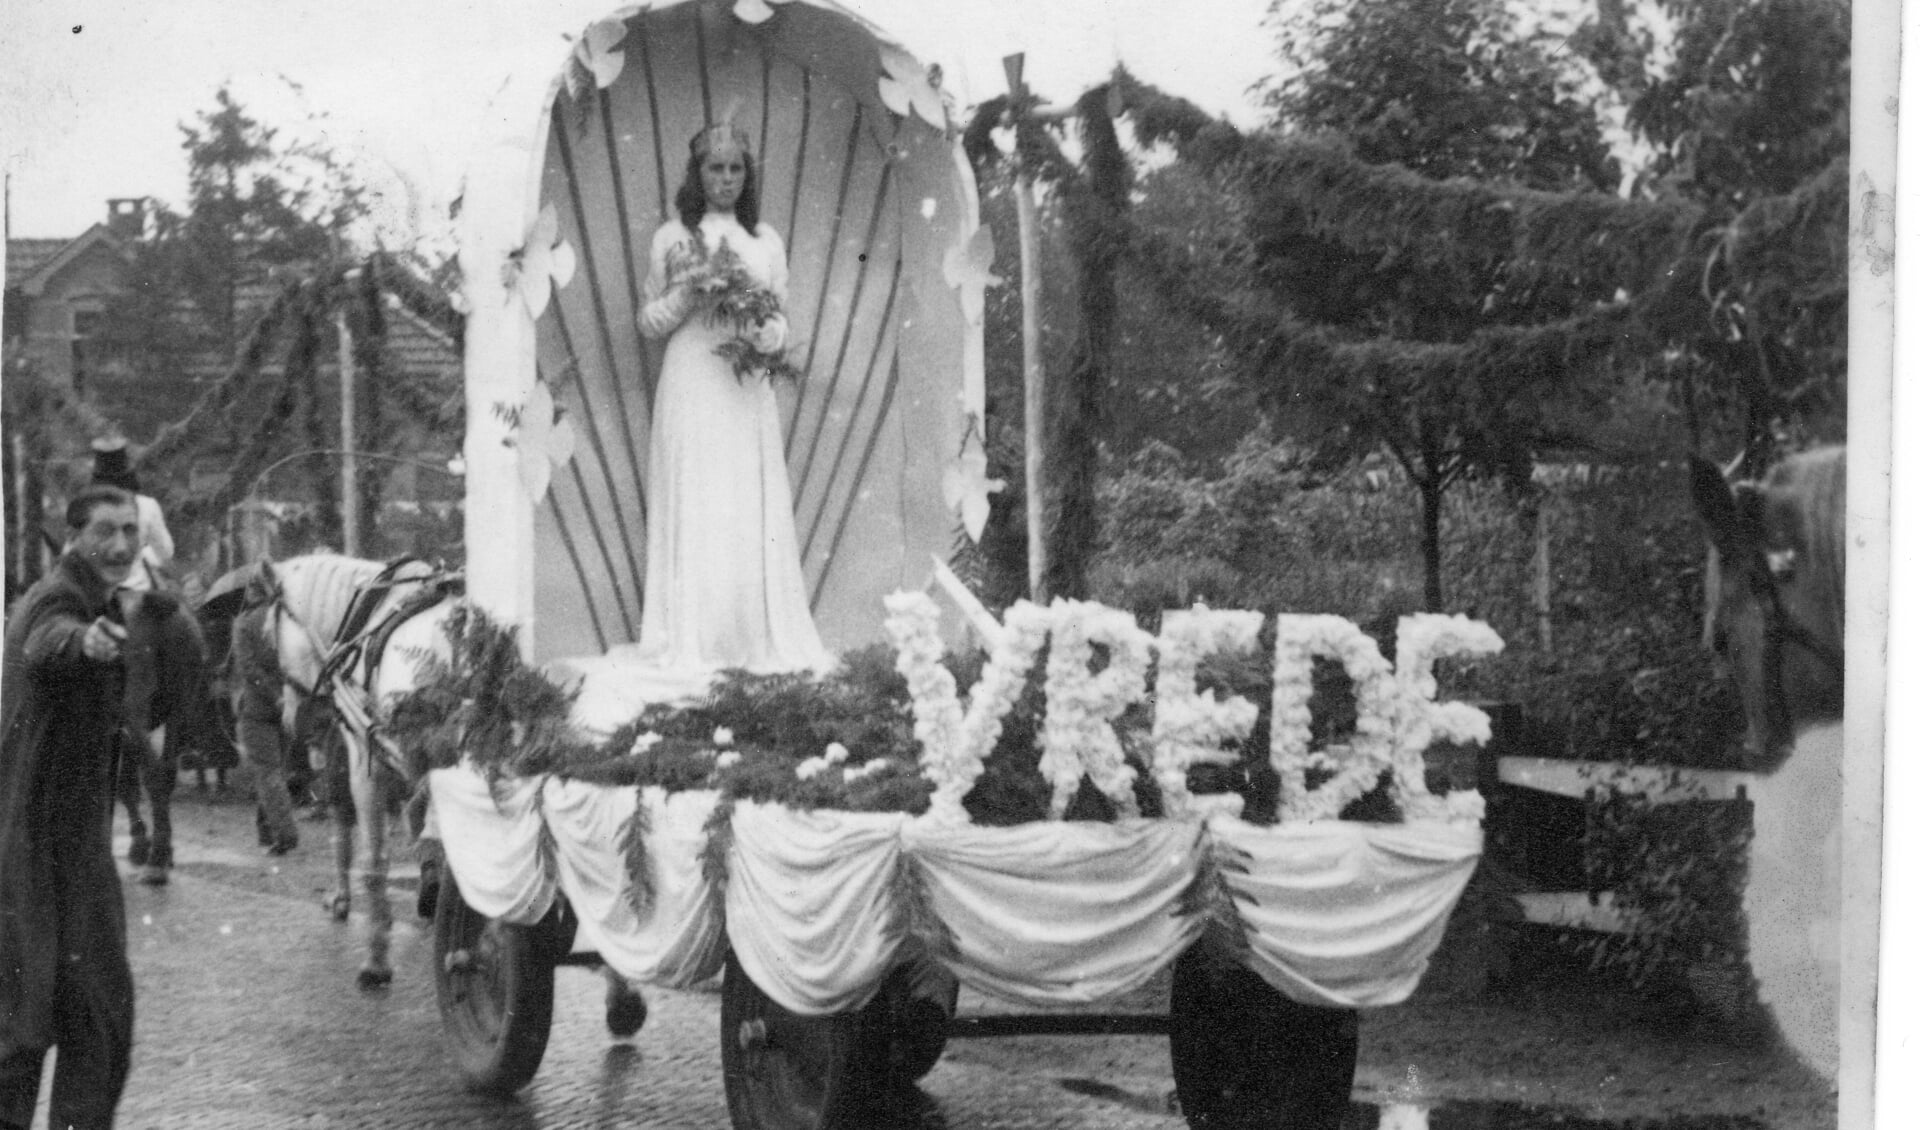 Bevrijdingsoptocht met de wagen van Het Hoge: 'Vrede'. Deze optocht werd gehouden rond Koninginnedag (Koningin Wilhelmina) op 31 augustus 1945. Foto: PR